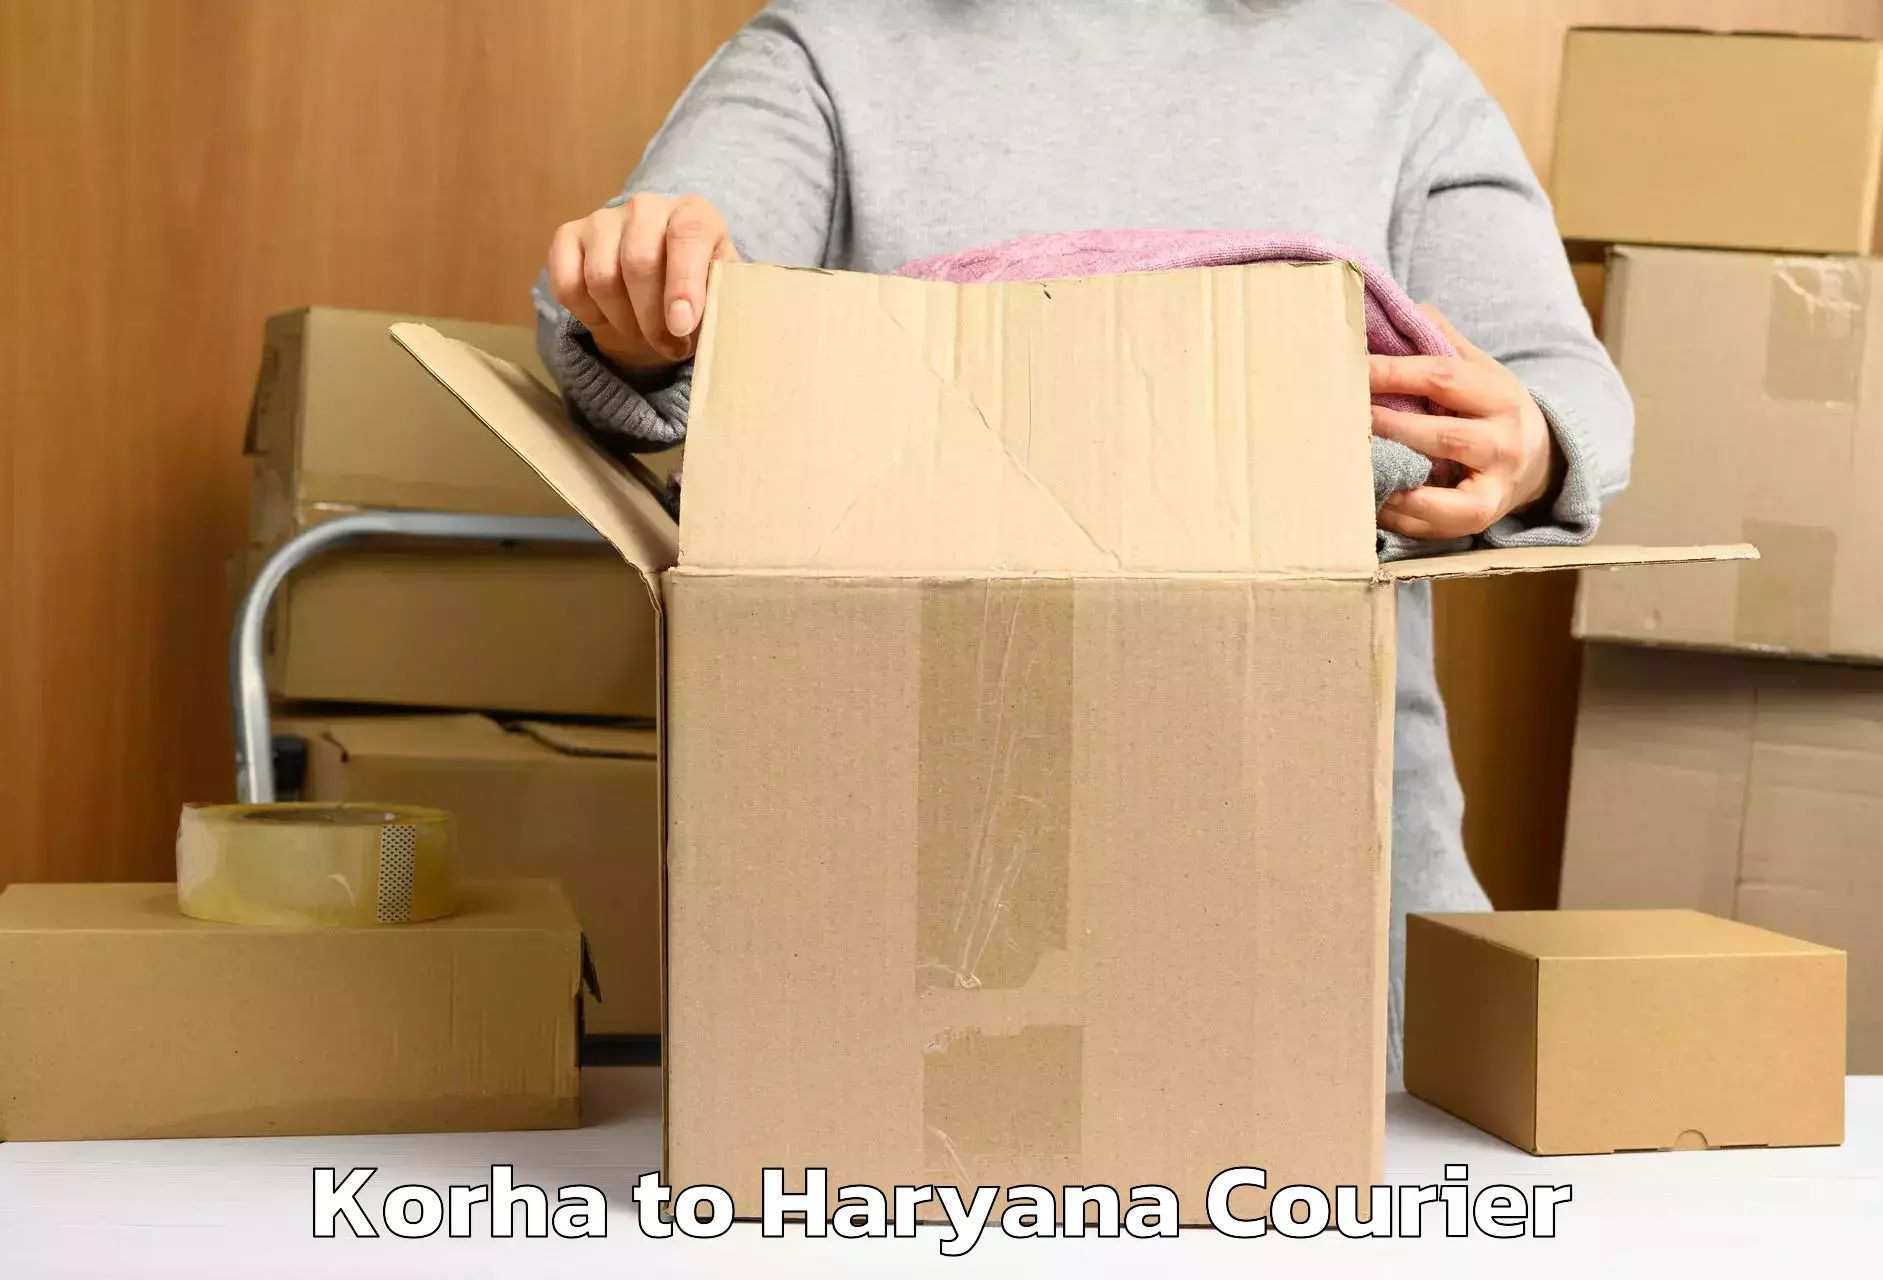 Same day luggage service Korha to Haryana